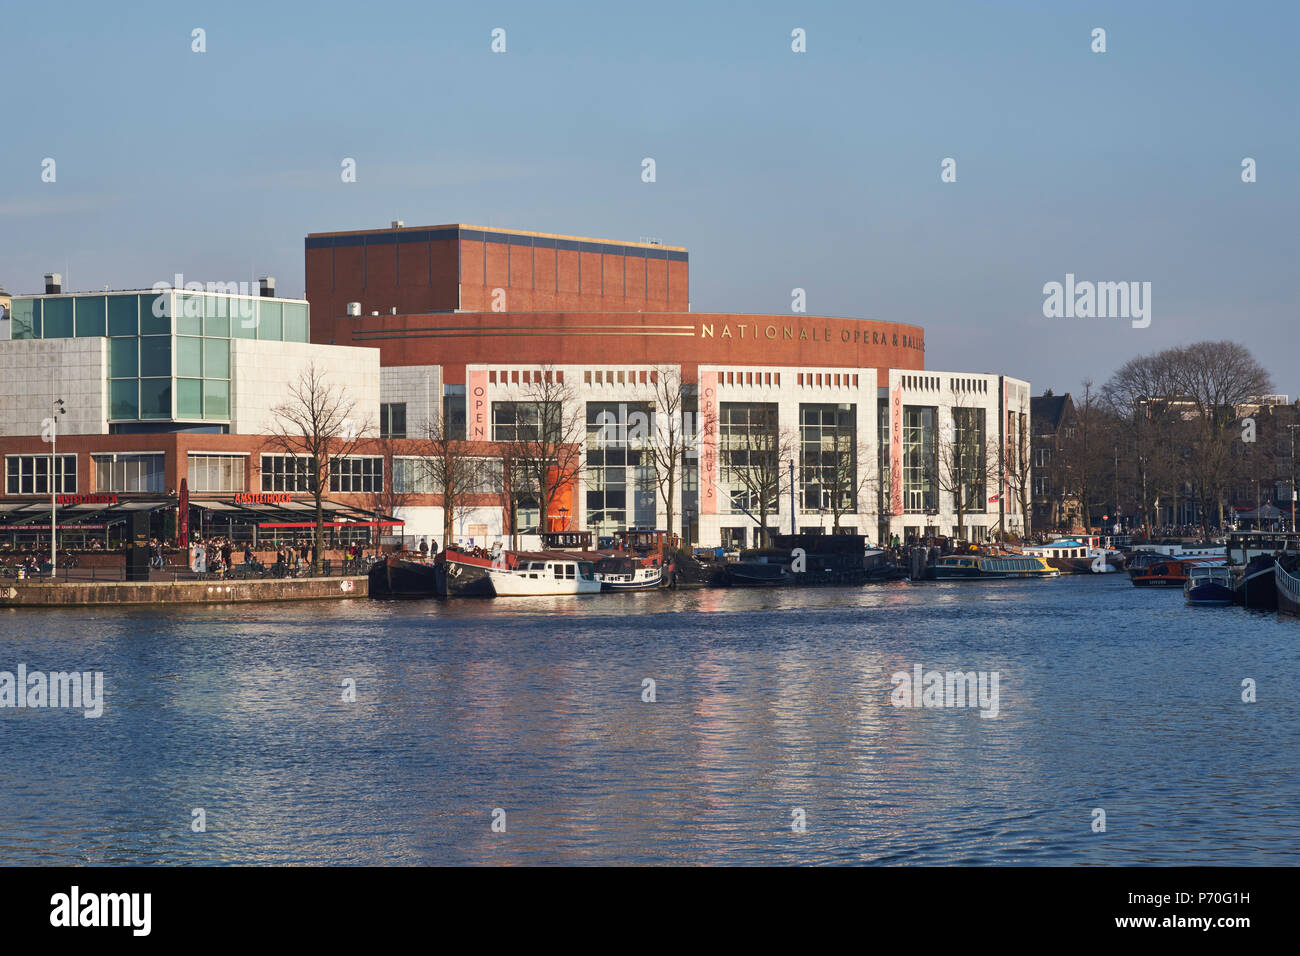 La ópera y el Ballet Nacional Holandés en Amsterdam, en las orillas del río Amstel, en el Waterlooplein. Construido 1980 por el arquitecto holandés Cees Dam. Foto de stock